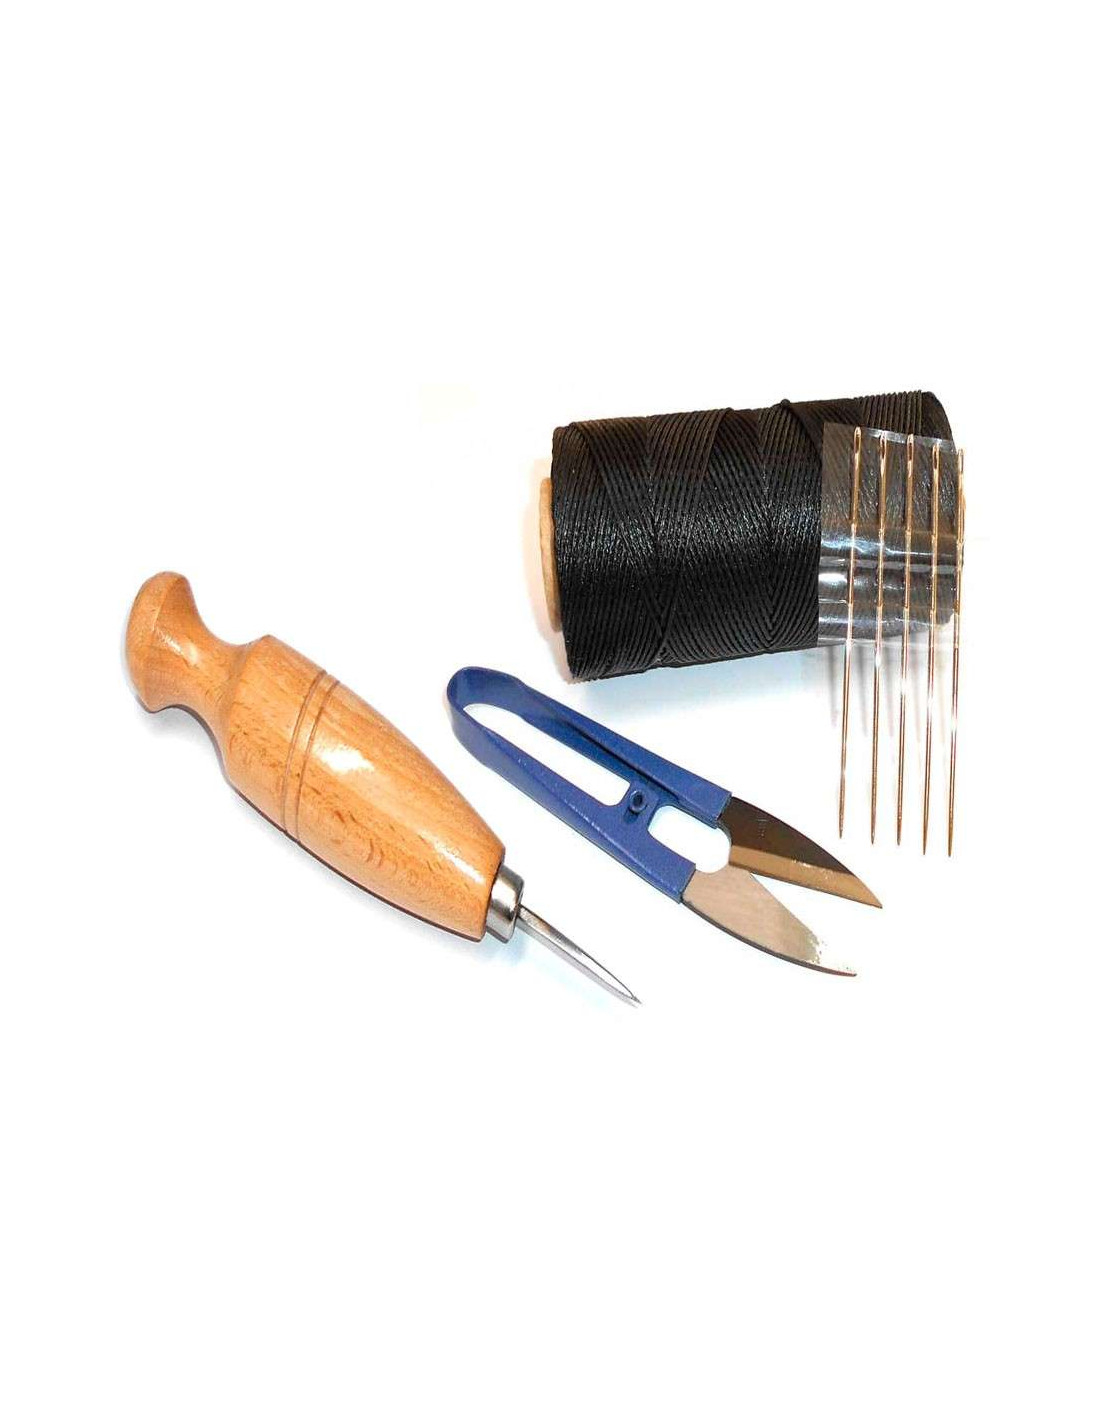 Kit para coser en el cuero. Kit de costura